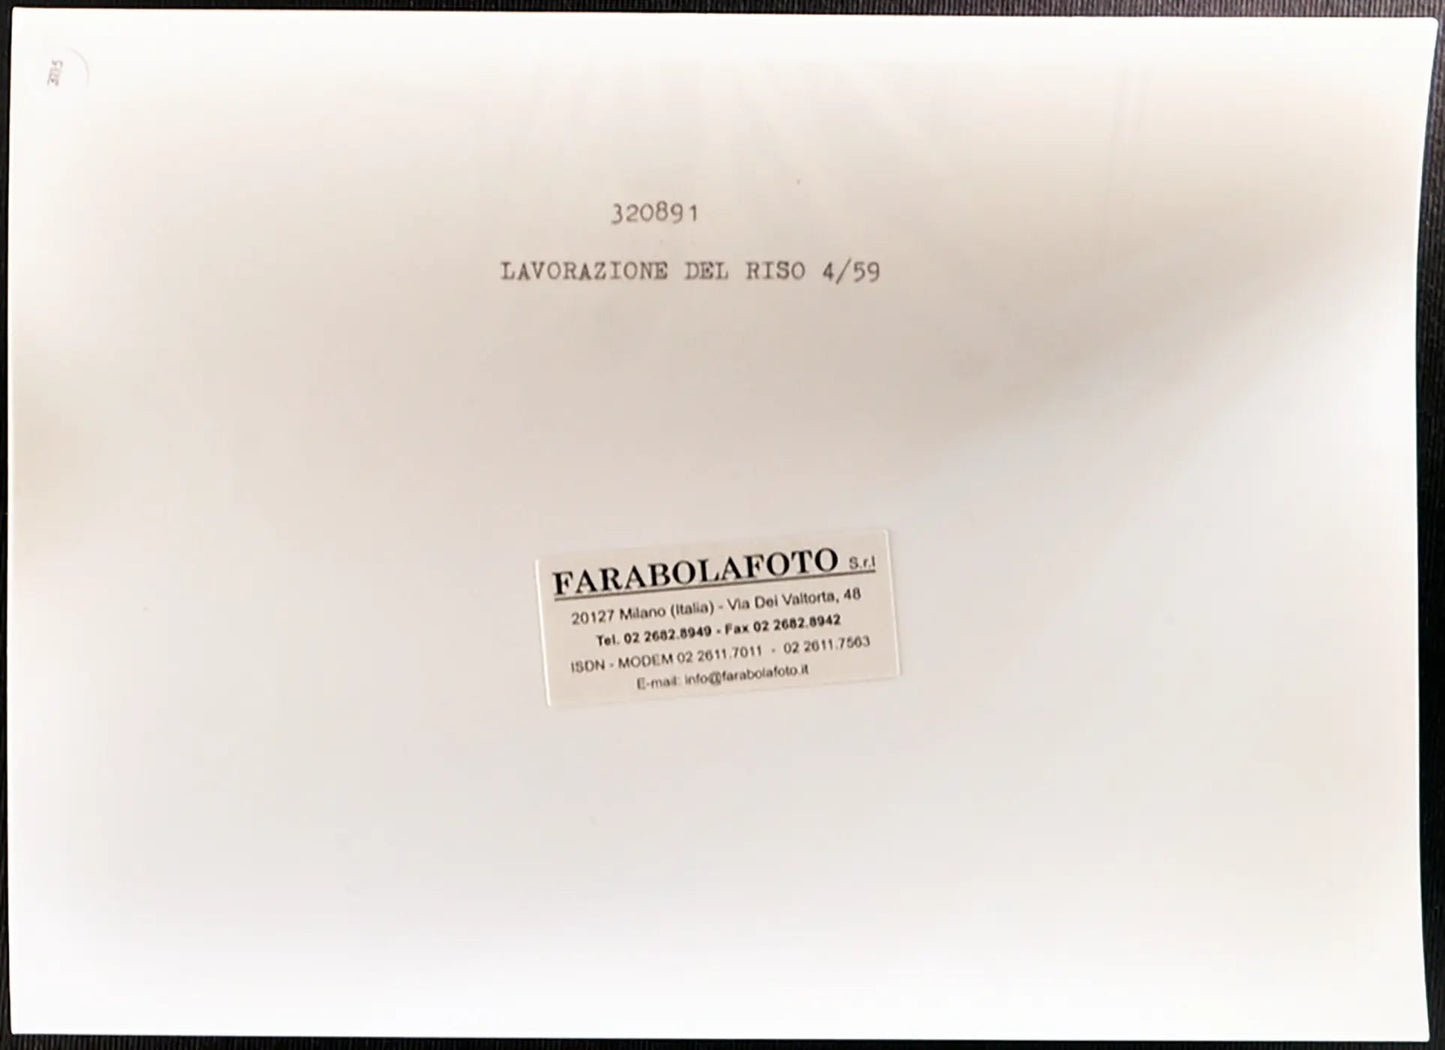 Lavorazione del riso 1959 Ft 3115 - Stampa 24x18 cm - Farabola Stampa ai sali d'argento (anni 90)